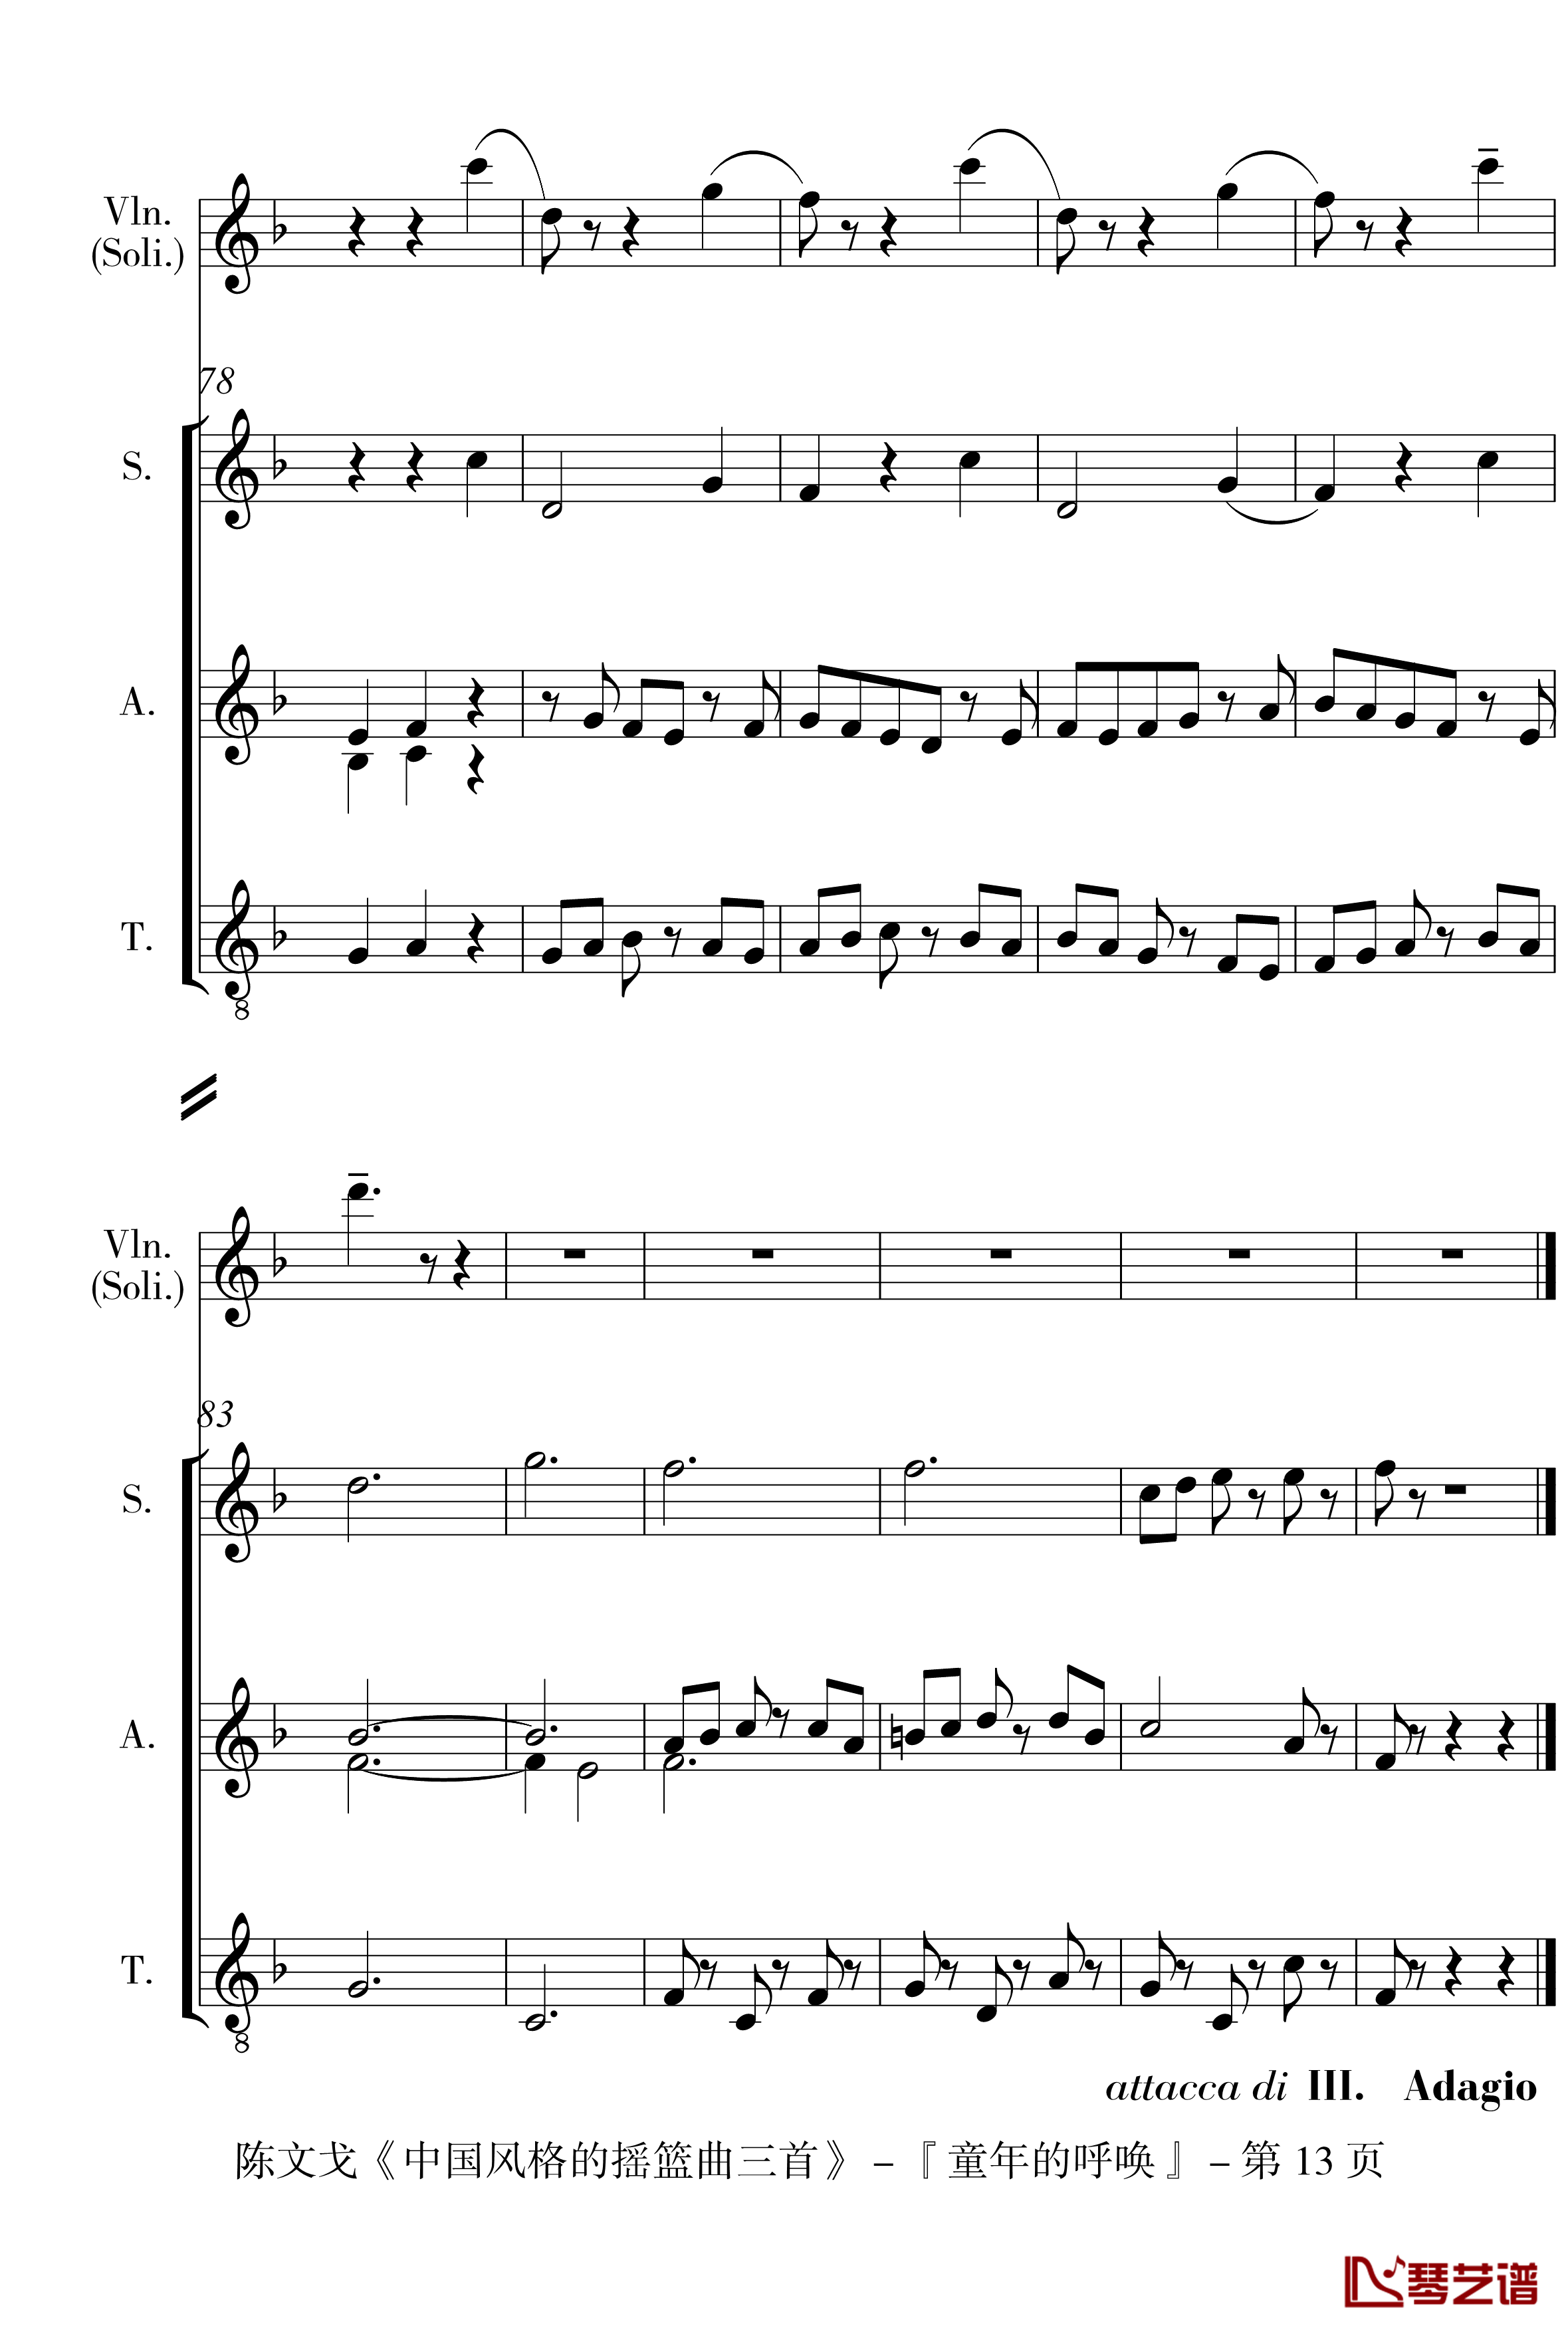 中国风格的合唱摇篮曲三首钢琴谱-I, II, III-陈文戈13